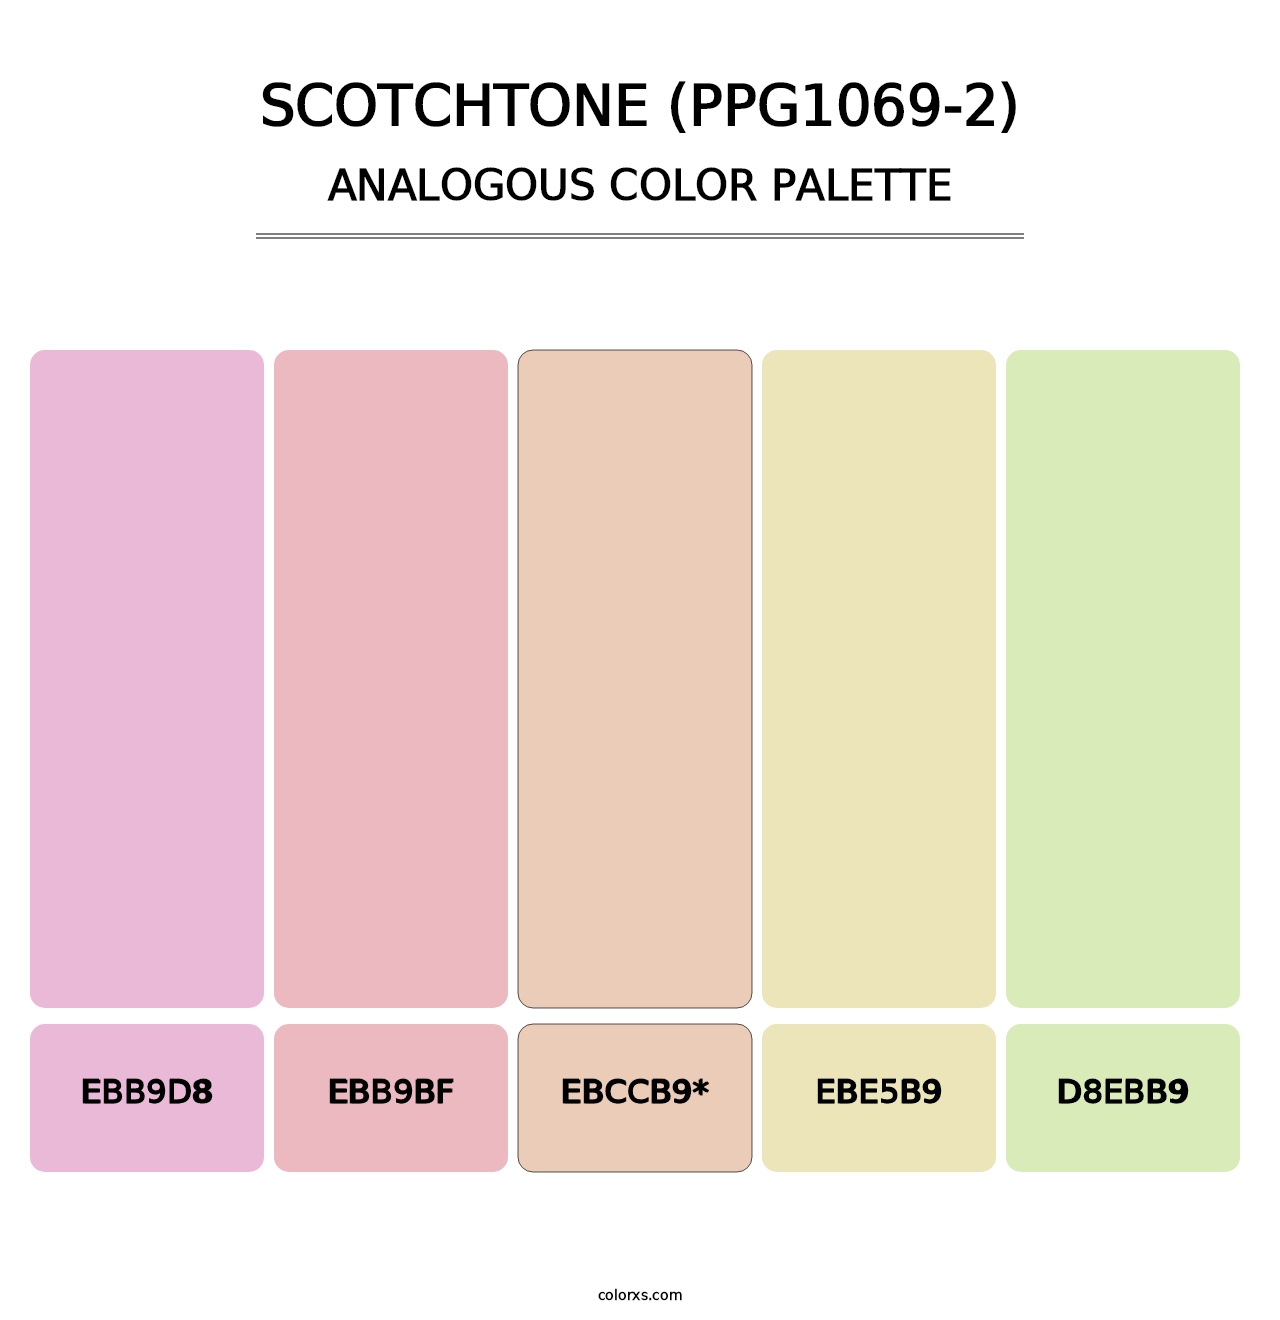 Scotchtone (PPG1069-2) - Analogous Color Palette